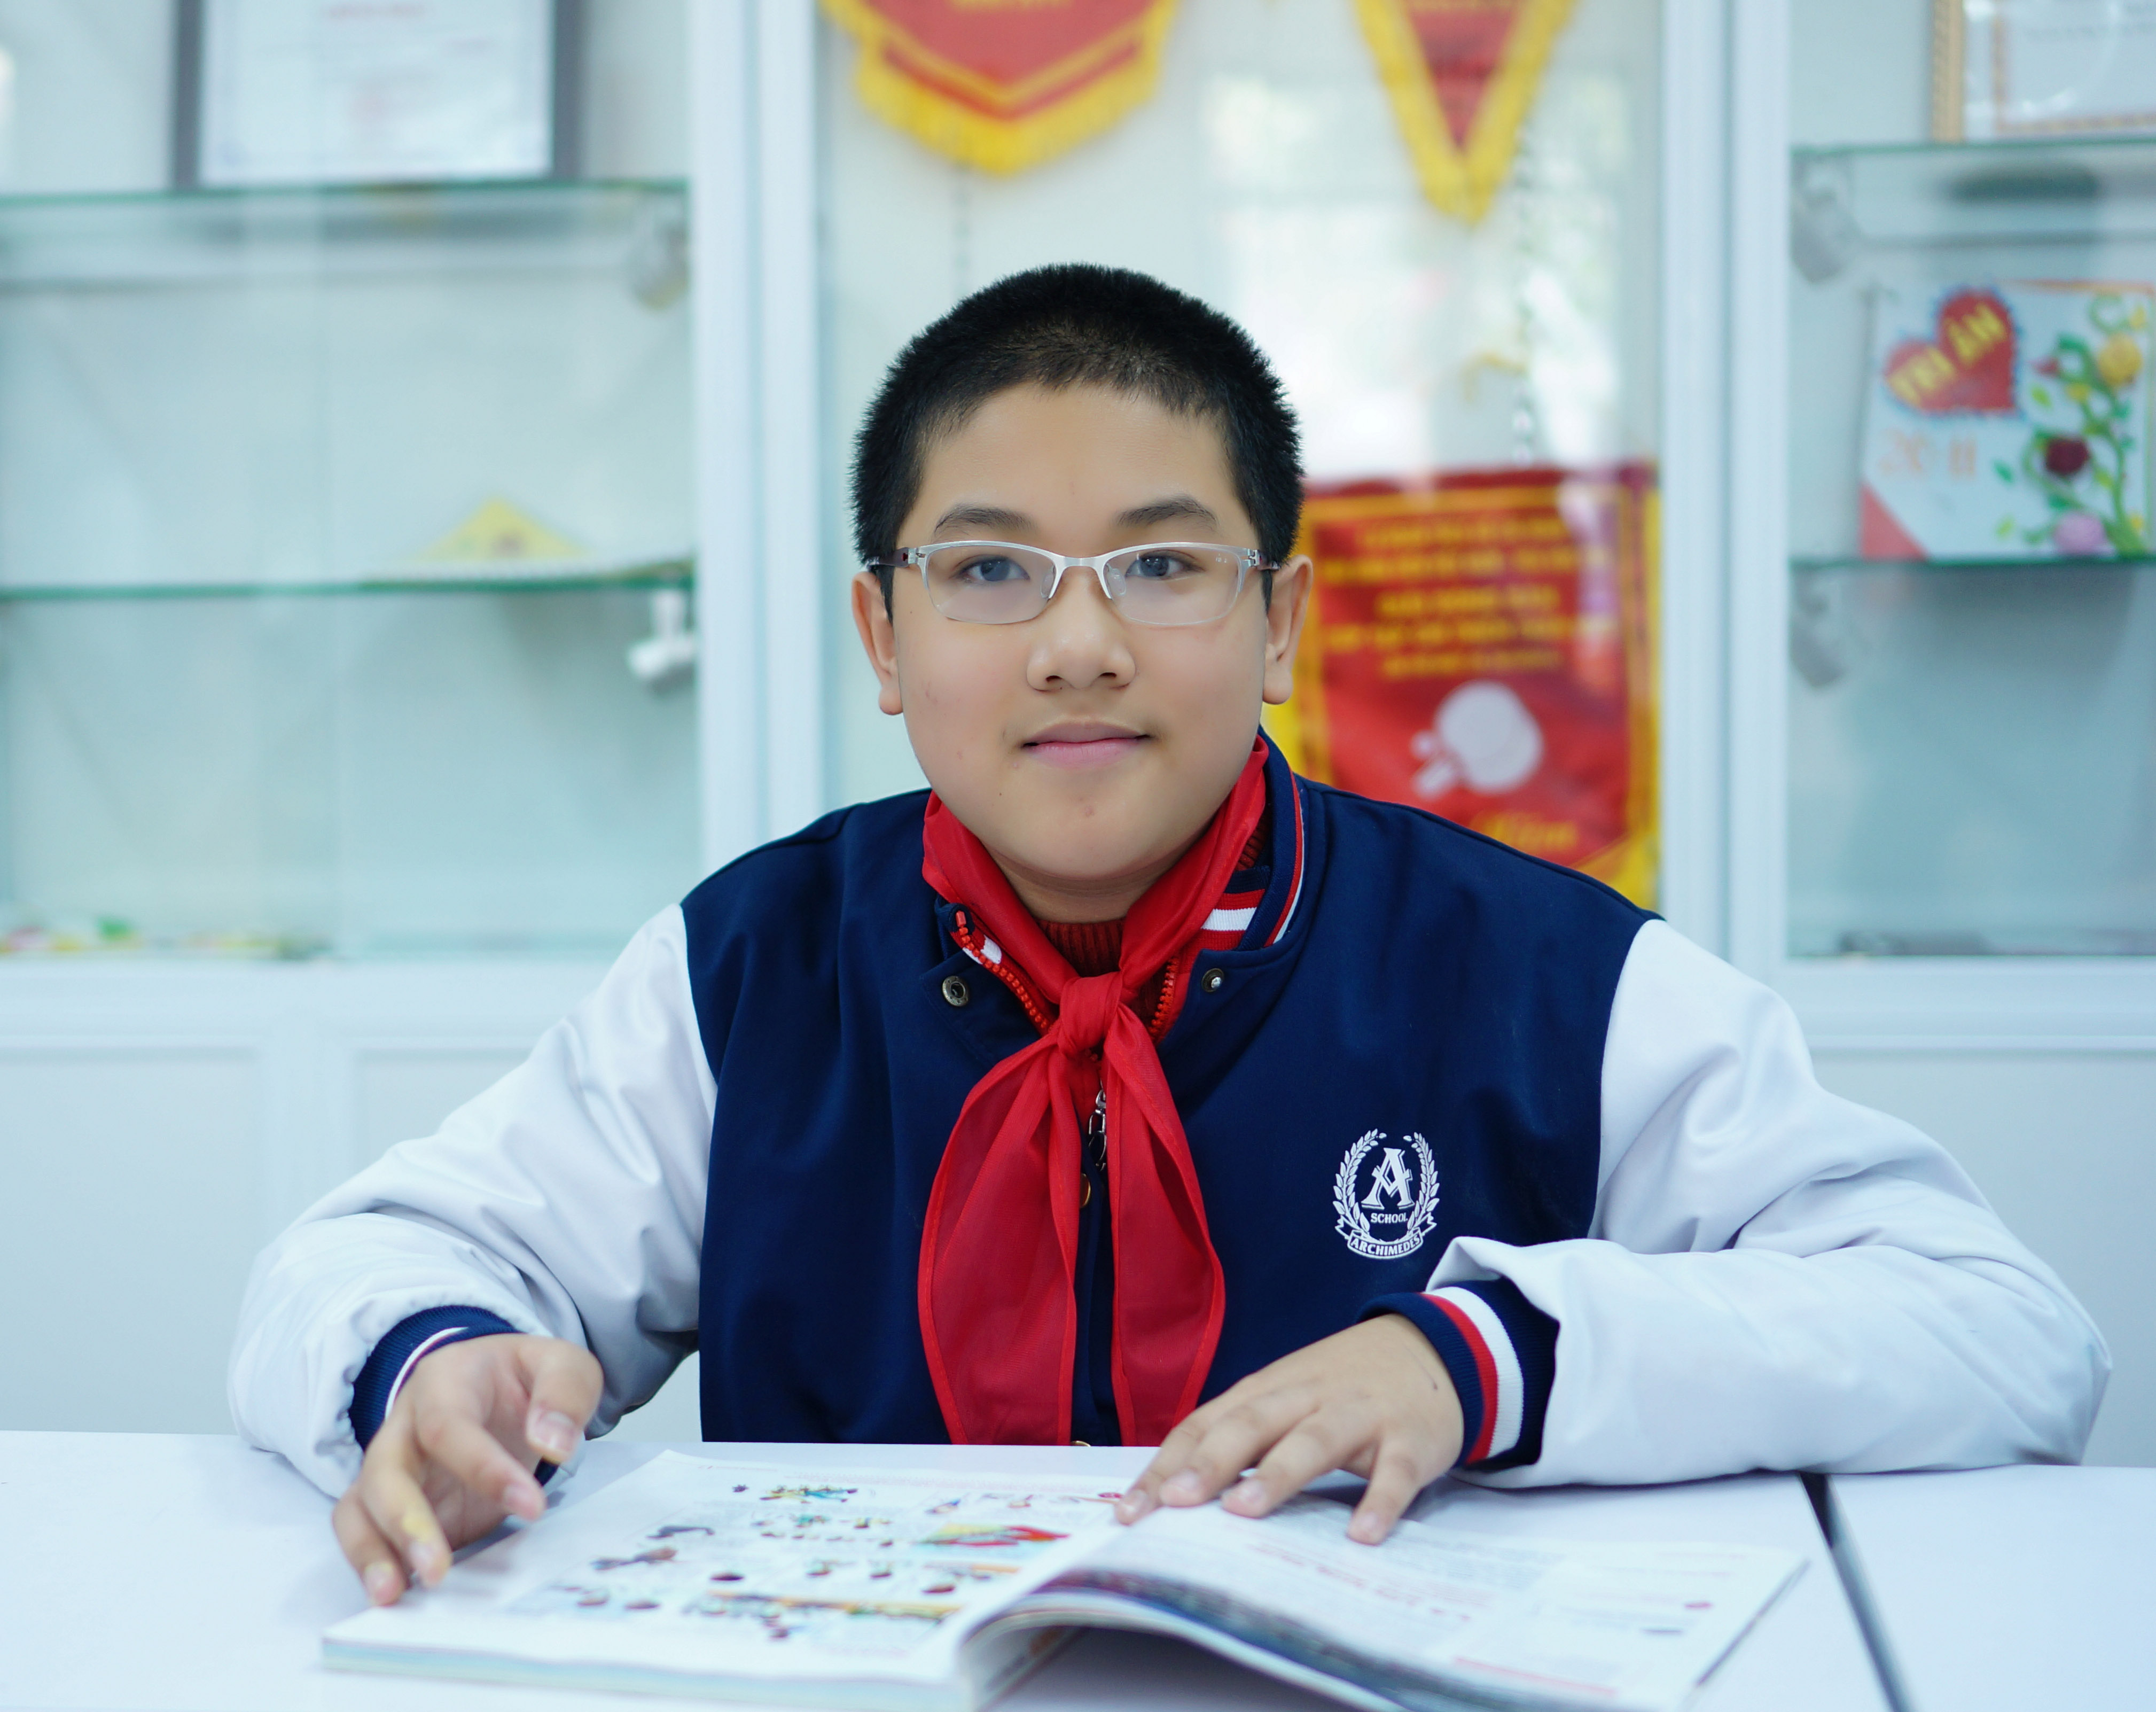 Chân Dung Nam Sinh Lớp 8 Giành Giải Đặc Biệt Toán Học Trẻ Quốc Tế 2015 -  Tinmoi.Vn